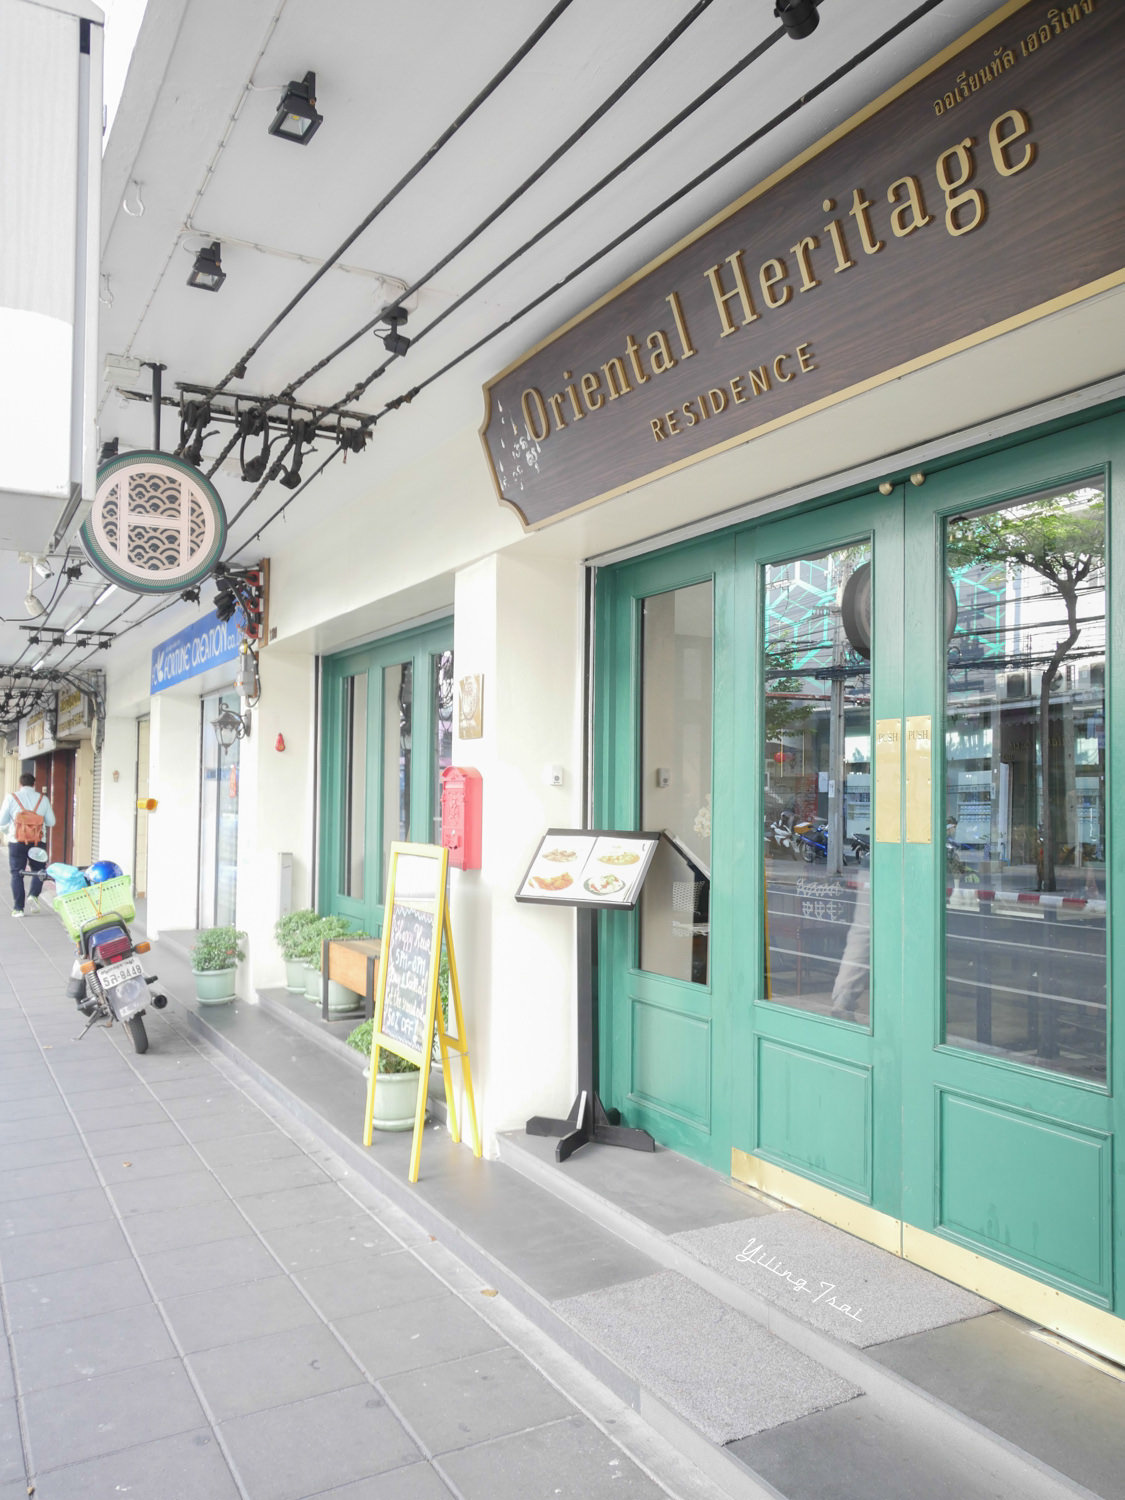 曼谷老城區住宿 Oriental Heritage Residence 東方古蹟公寓 舊城平價質感飯店